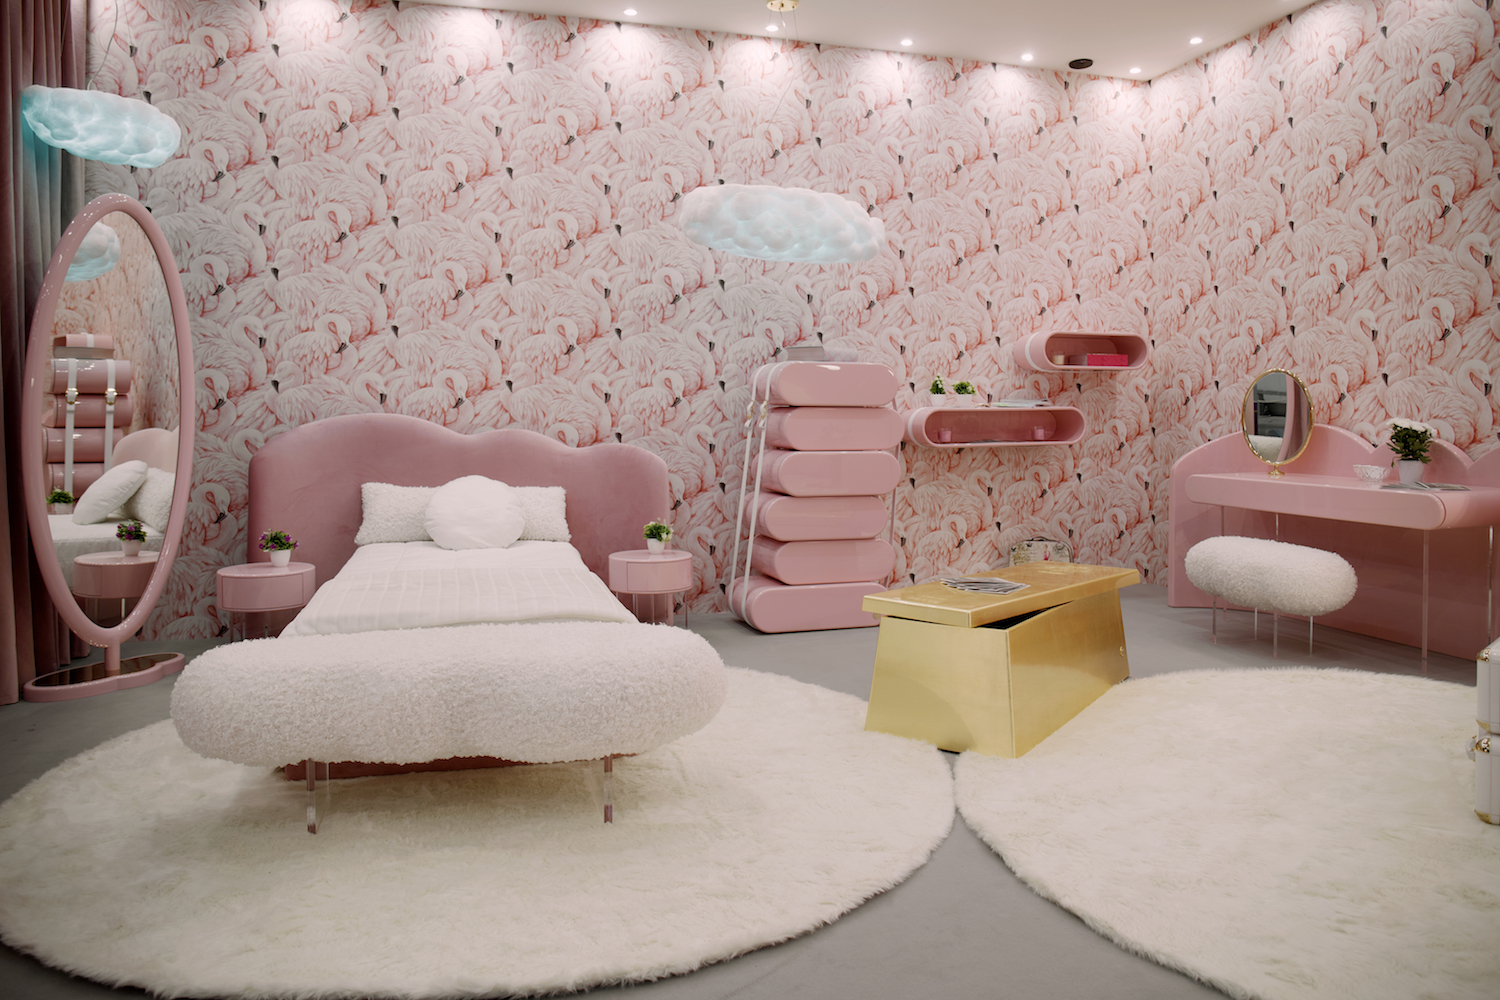 furniture circu design luxury trends 2021 bedroom for kids children